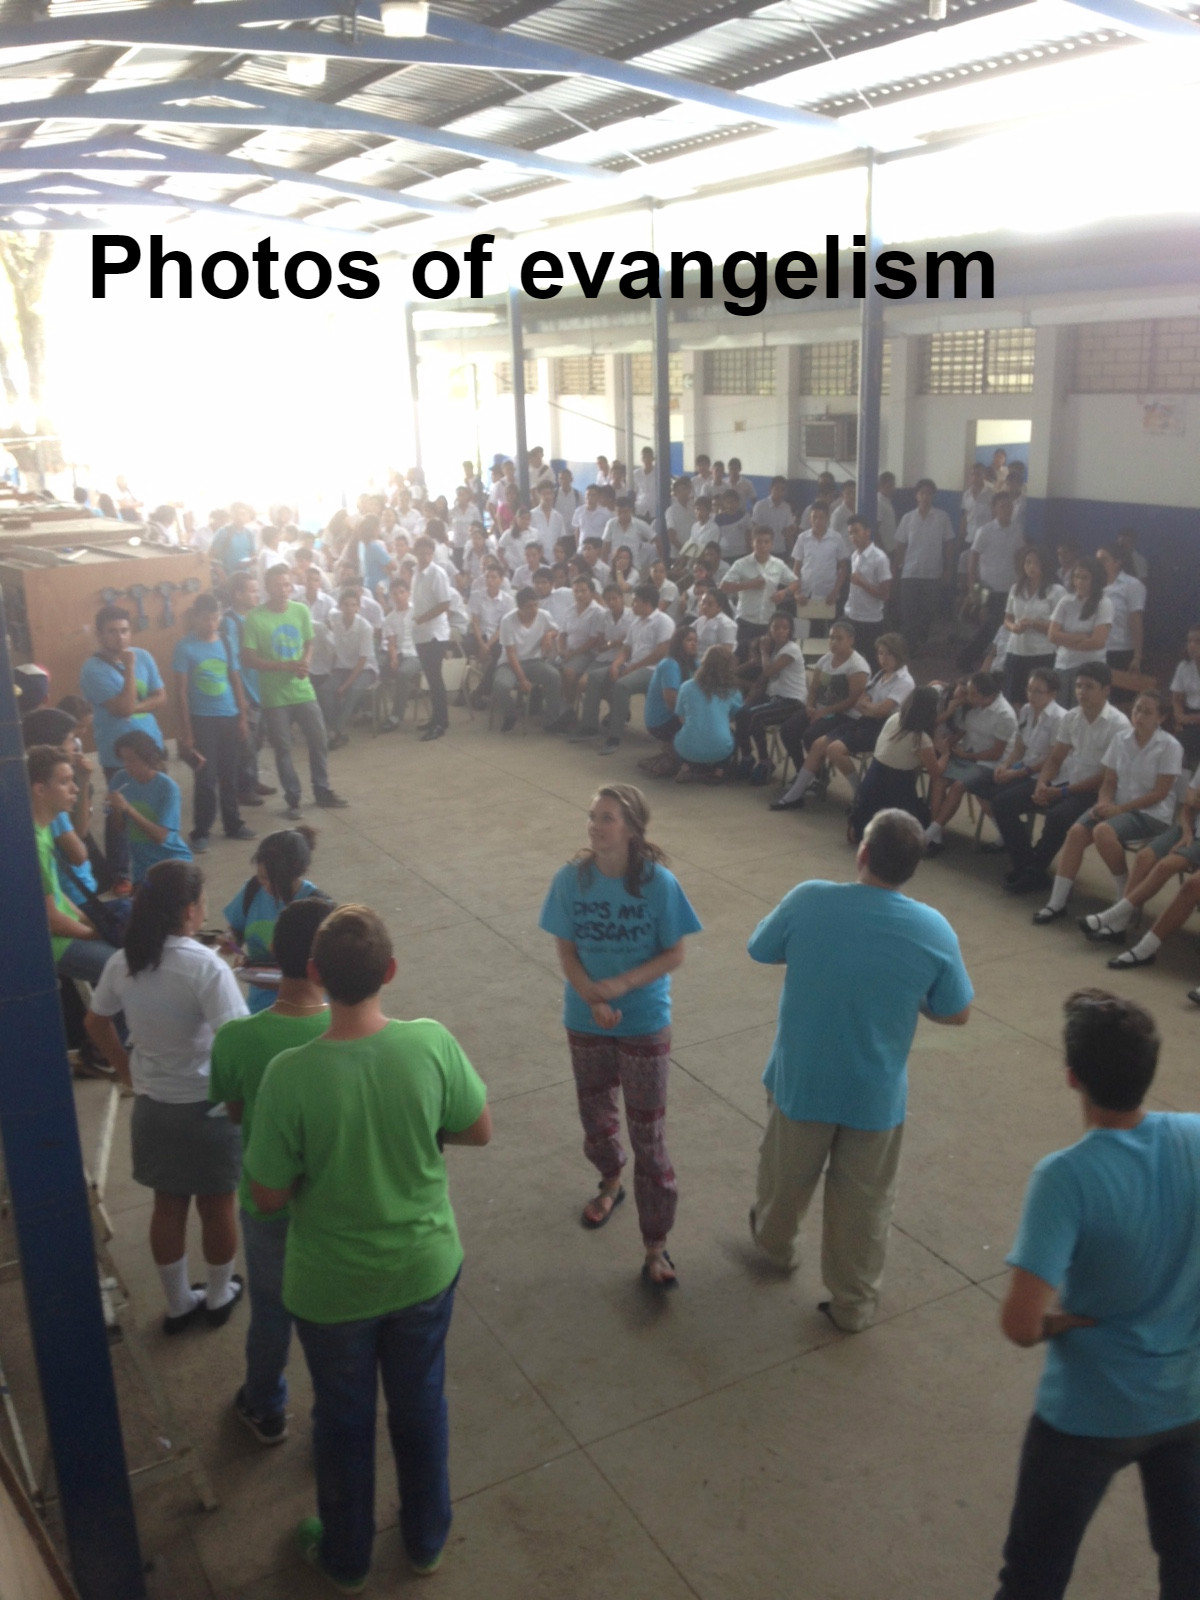 Photos de evangelism1